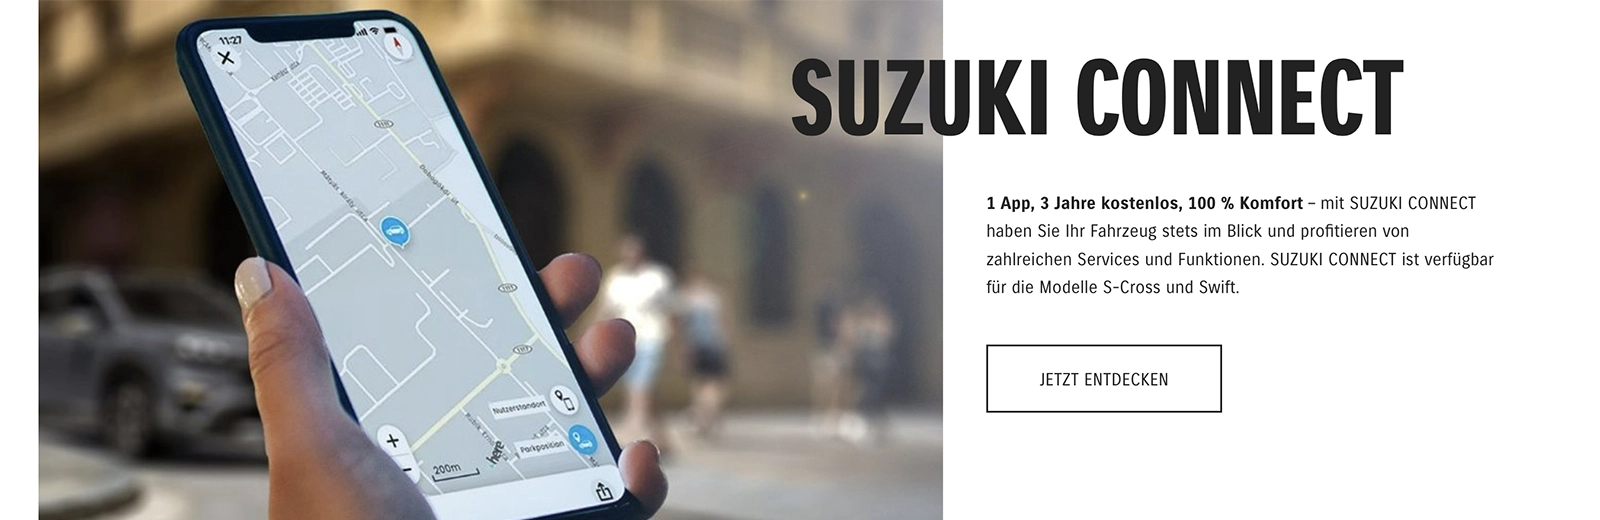 SUZUKI CONNECT  1 App, 3 Jahre kostenlos, 100 % Komfort – mit SUZUKI CONNECT haben Sie Ihr Fahrzeug stets im Blick und profitieren von zahlreichen Services und Funktionen. SUZUKI CONNECT ist verfügbar für die Modelle S-Cross und Swift.